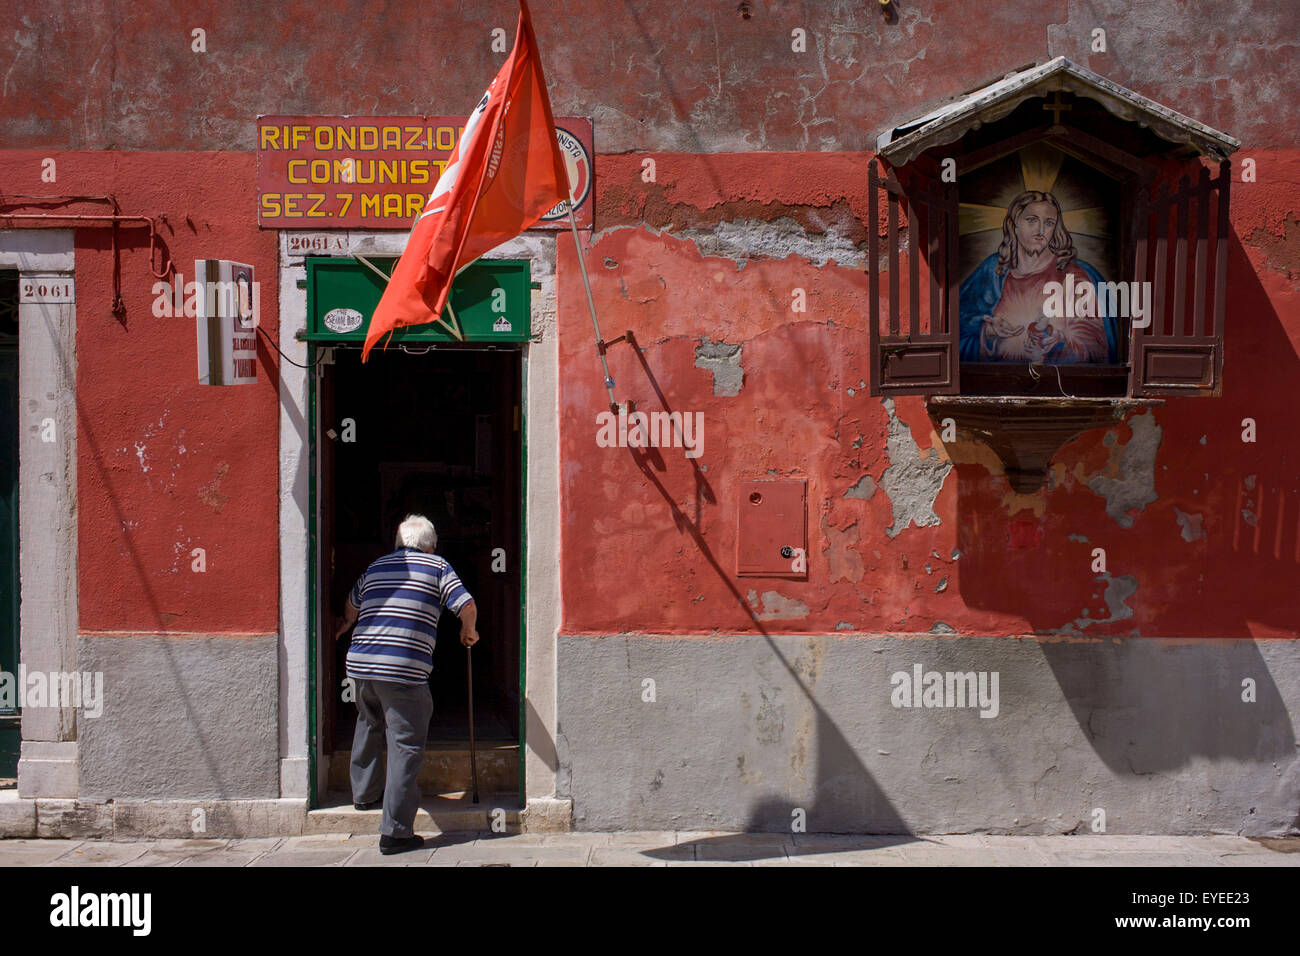 Un uomo anziano con un bastone da passeggio entra le ombre del partito comunista italiano in ufficio con una strada Santuario di Gesù sulla sua parete, Foto Stock